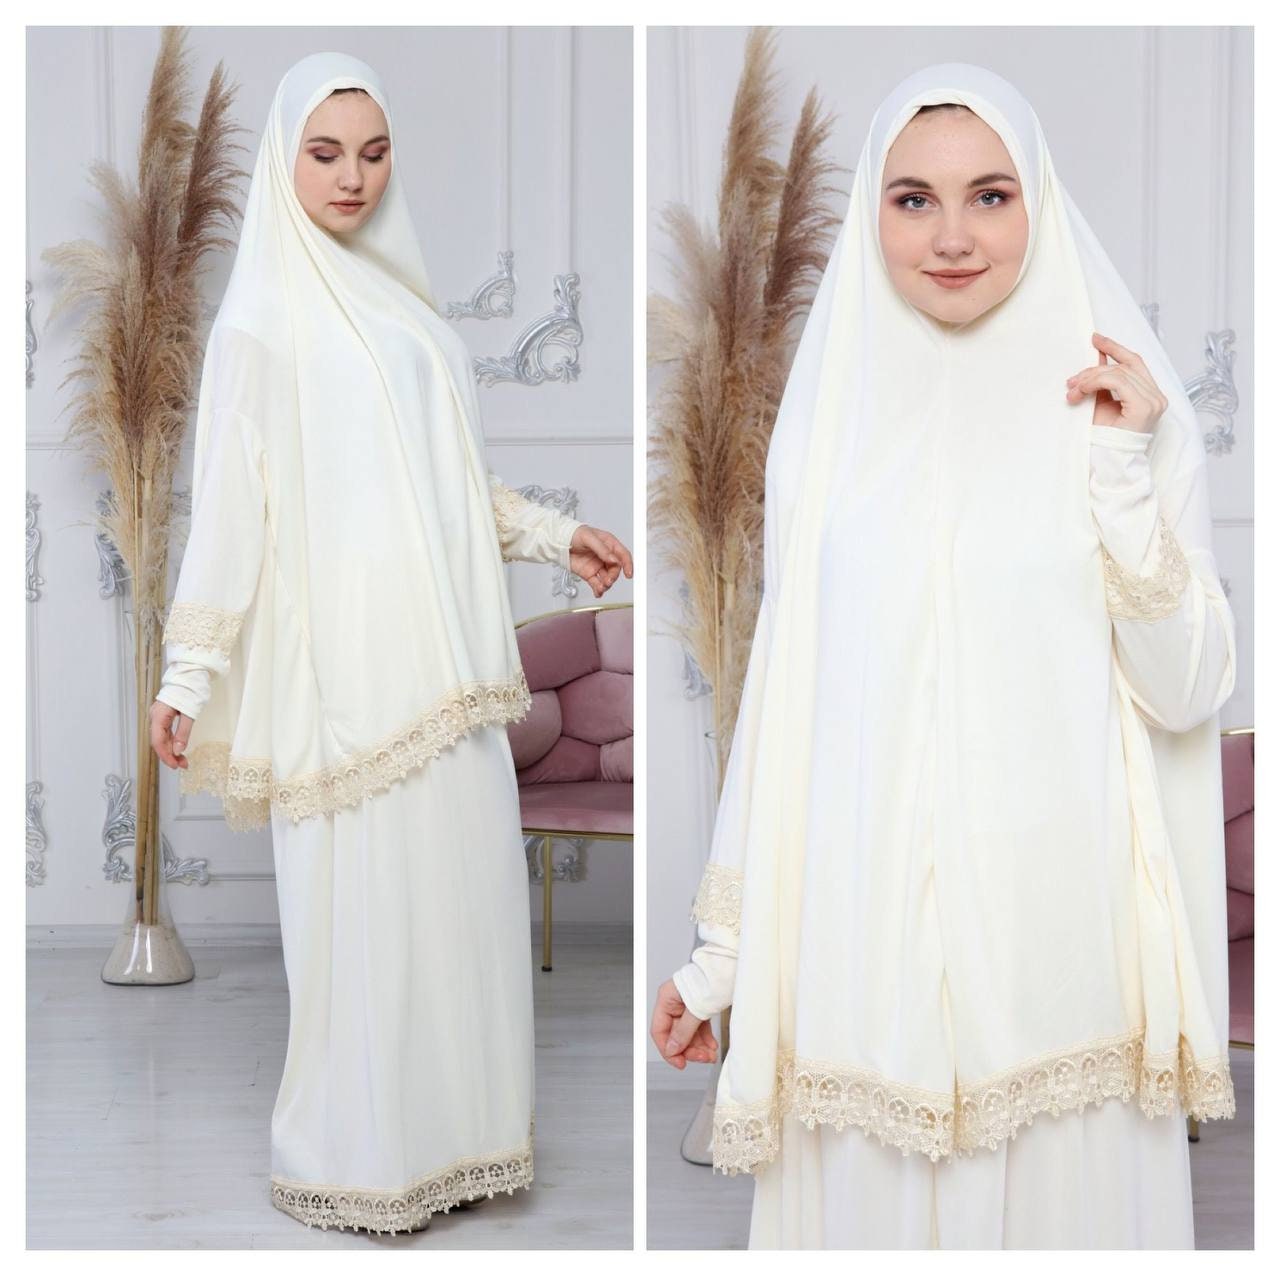 Islamic Black Prayer Dress / Gift for Her / Full Body Cover - Etsy